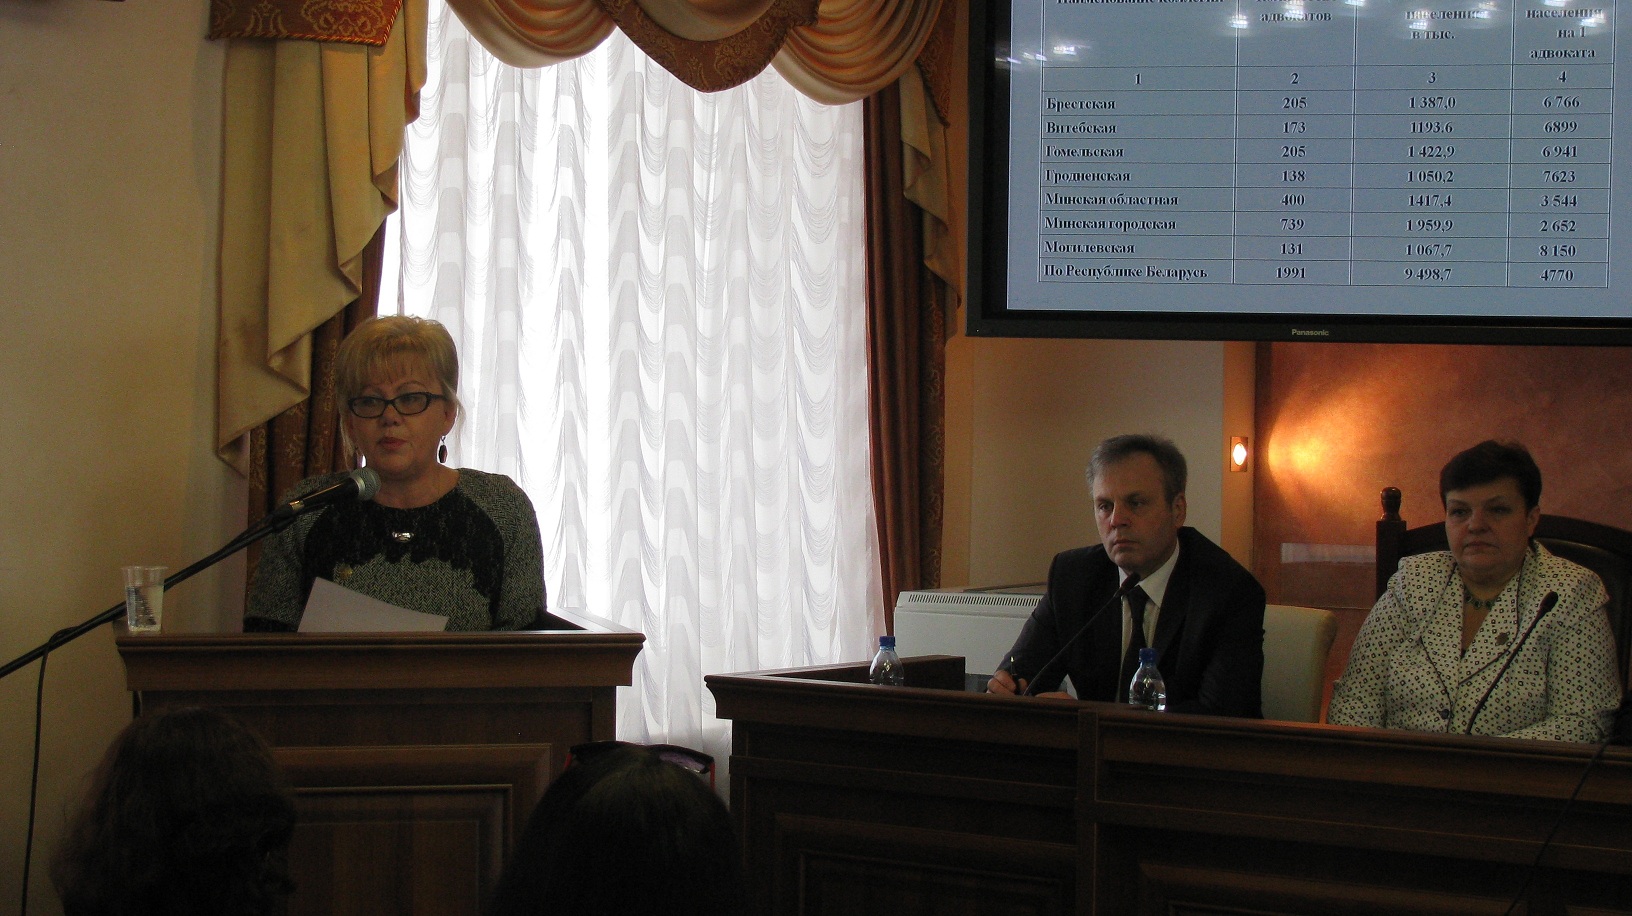 Отчетно-выборная конференция cостоялась в Брестской областной коллегии адвокатов